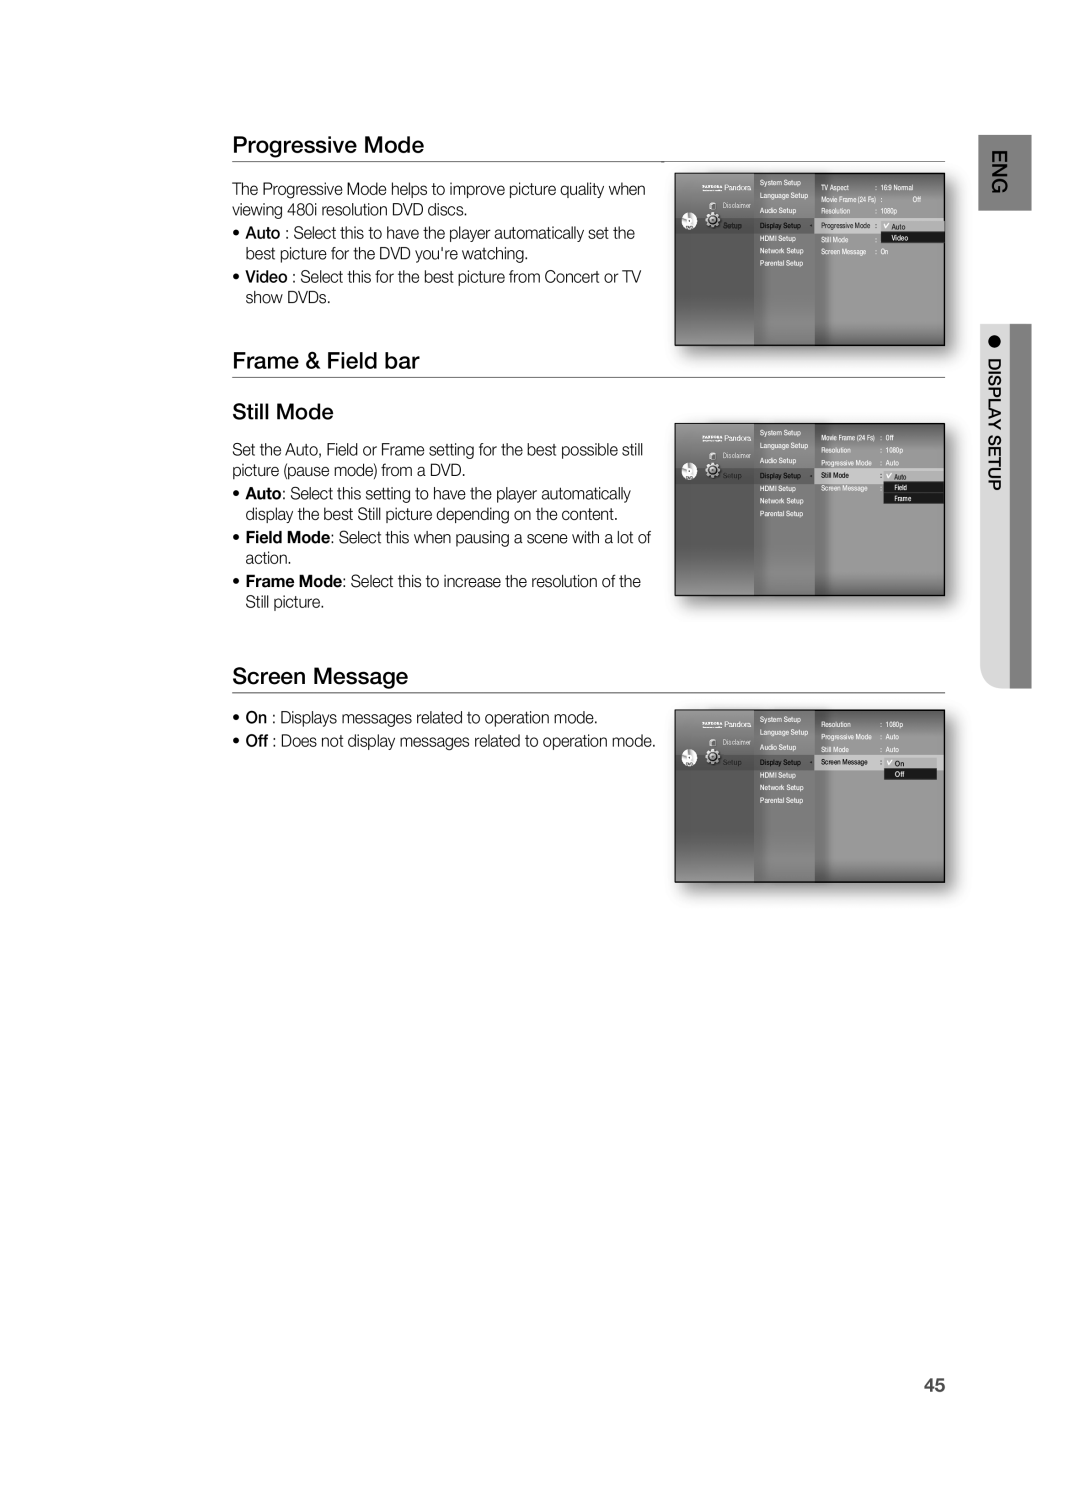 Samsung HT-BD1200 Progressive Mode, Frame & Field bar, Screen Message, Still Mode, viewing 480i resolution DVD discs, Auto 